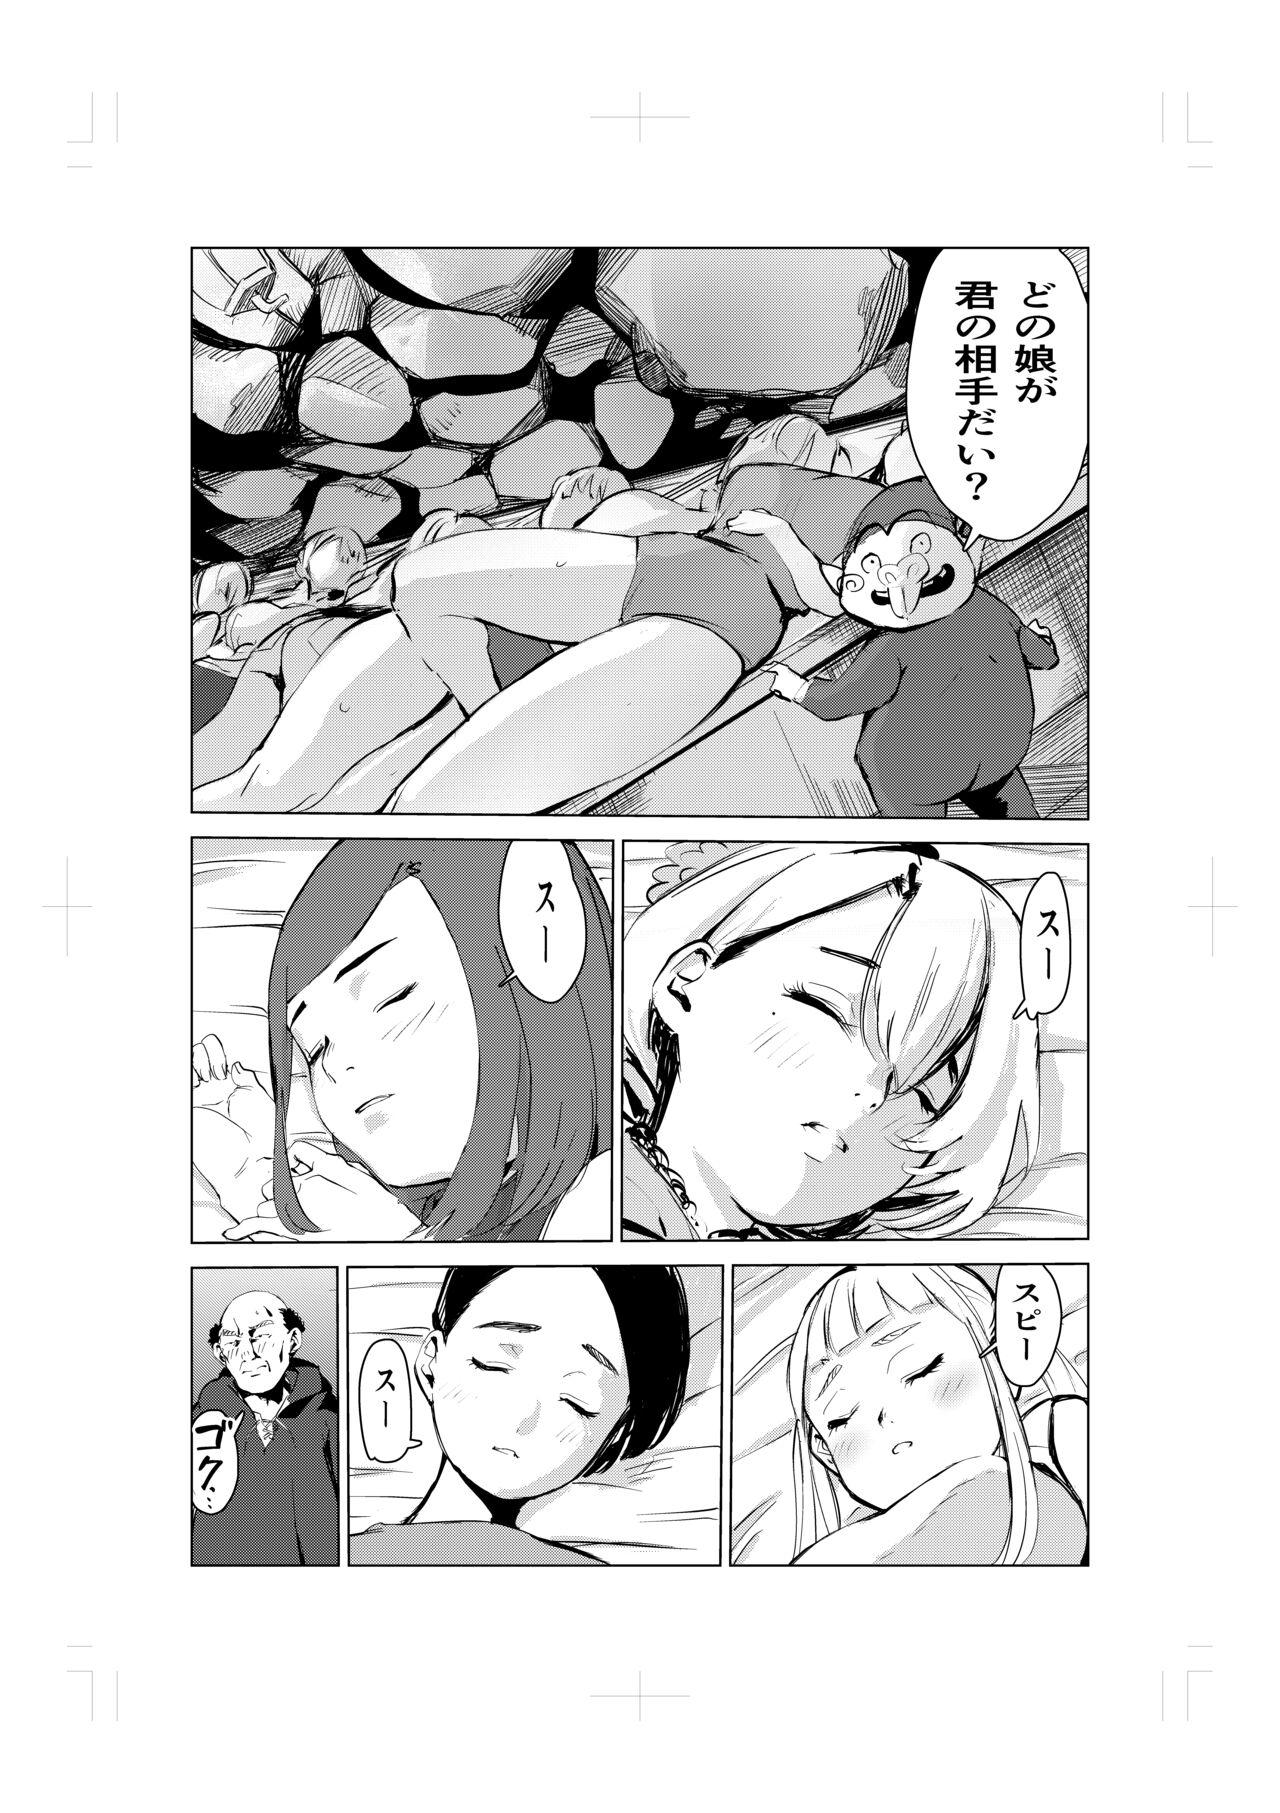 Strapon Nemuri hime no ketsu ana ne bakku monogatari - Original Pierced - Page 6